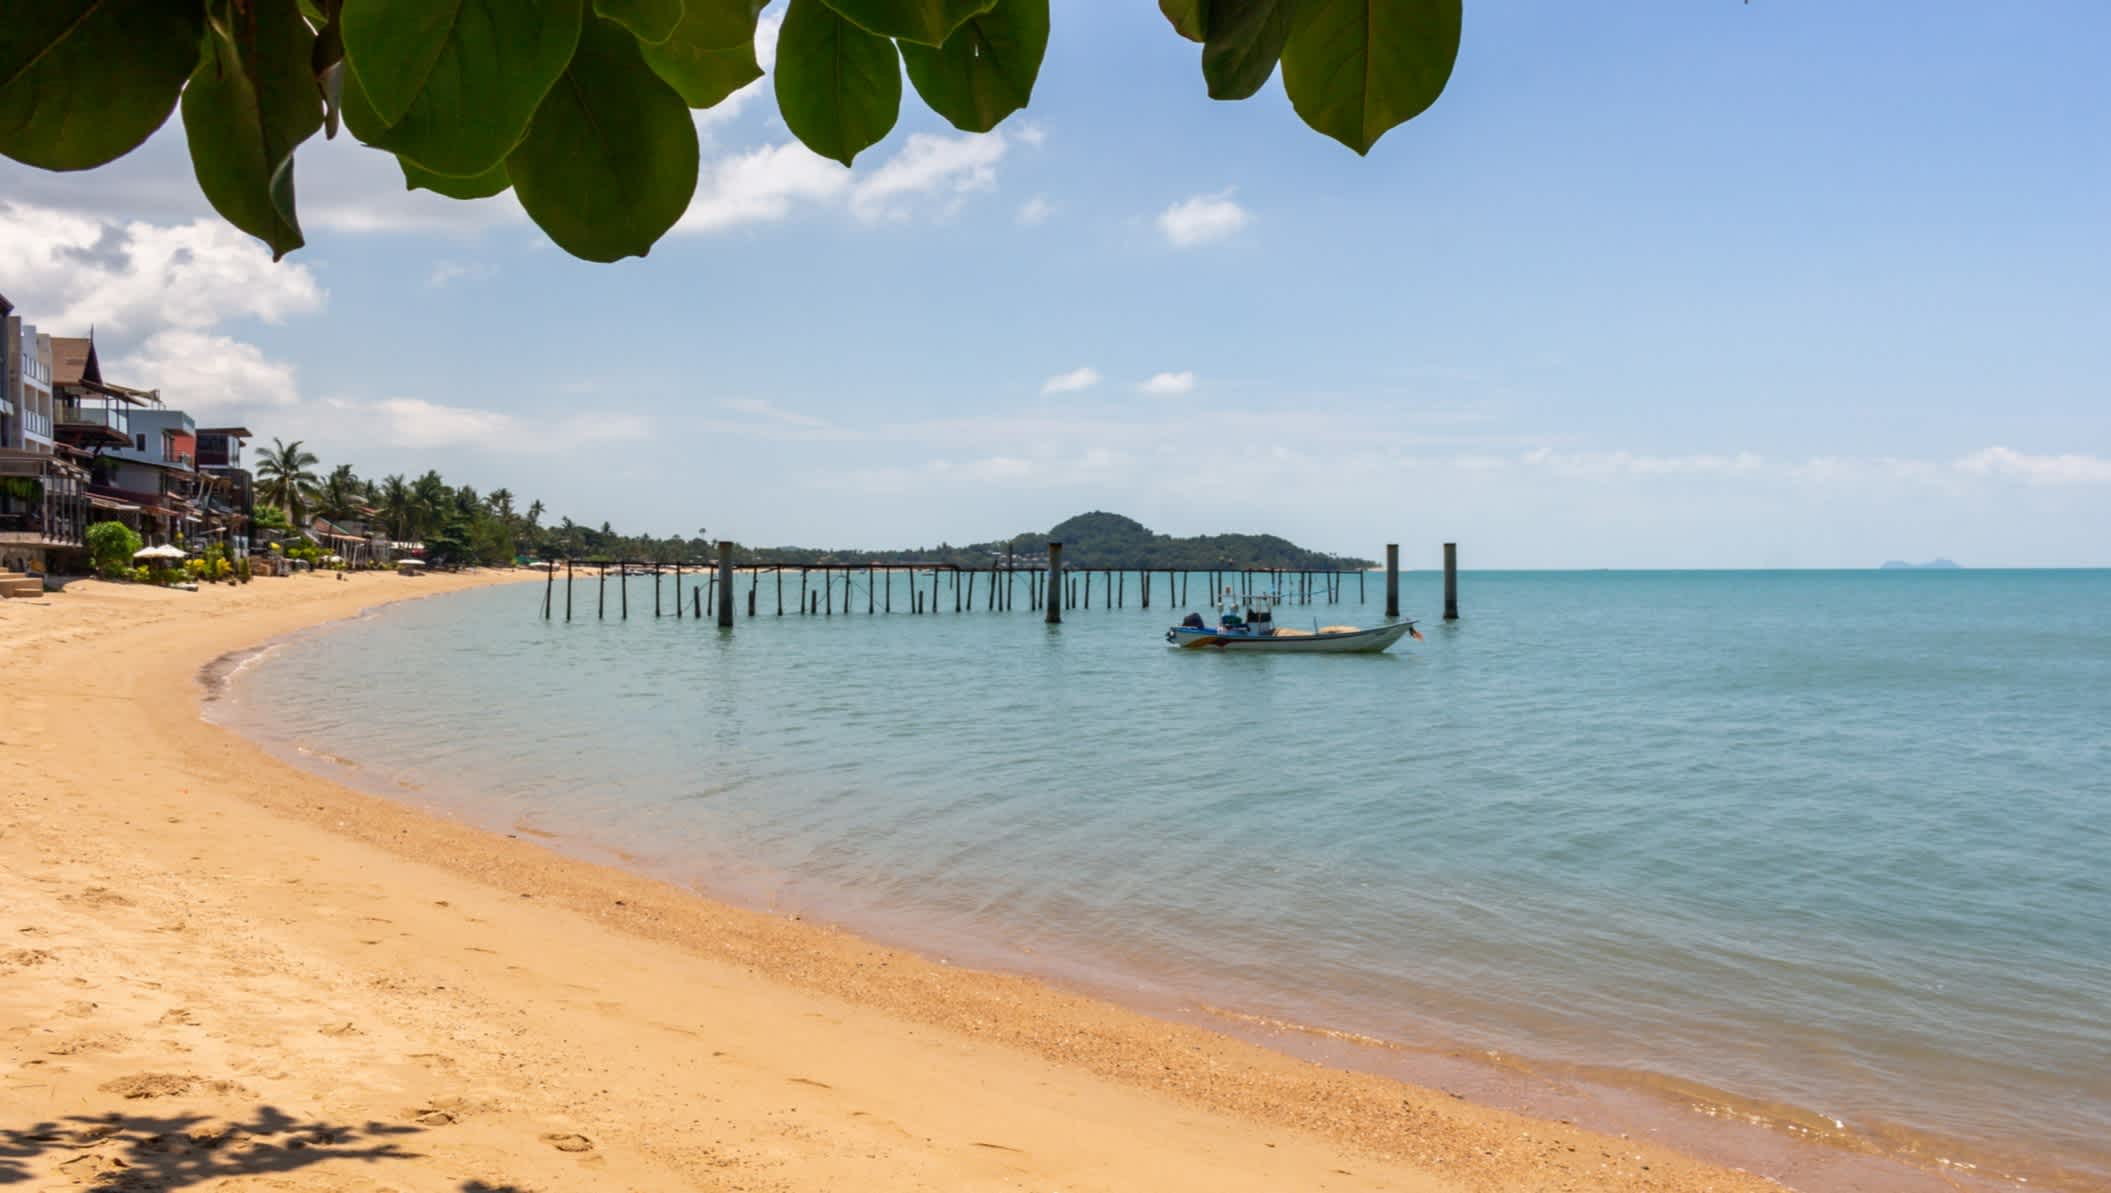 La plage du célèbre Fisherman's Village sur l'île de Koh Samui, Thaïlande
